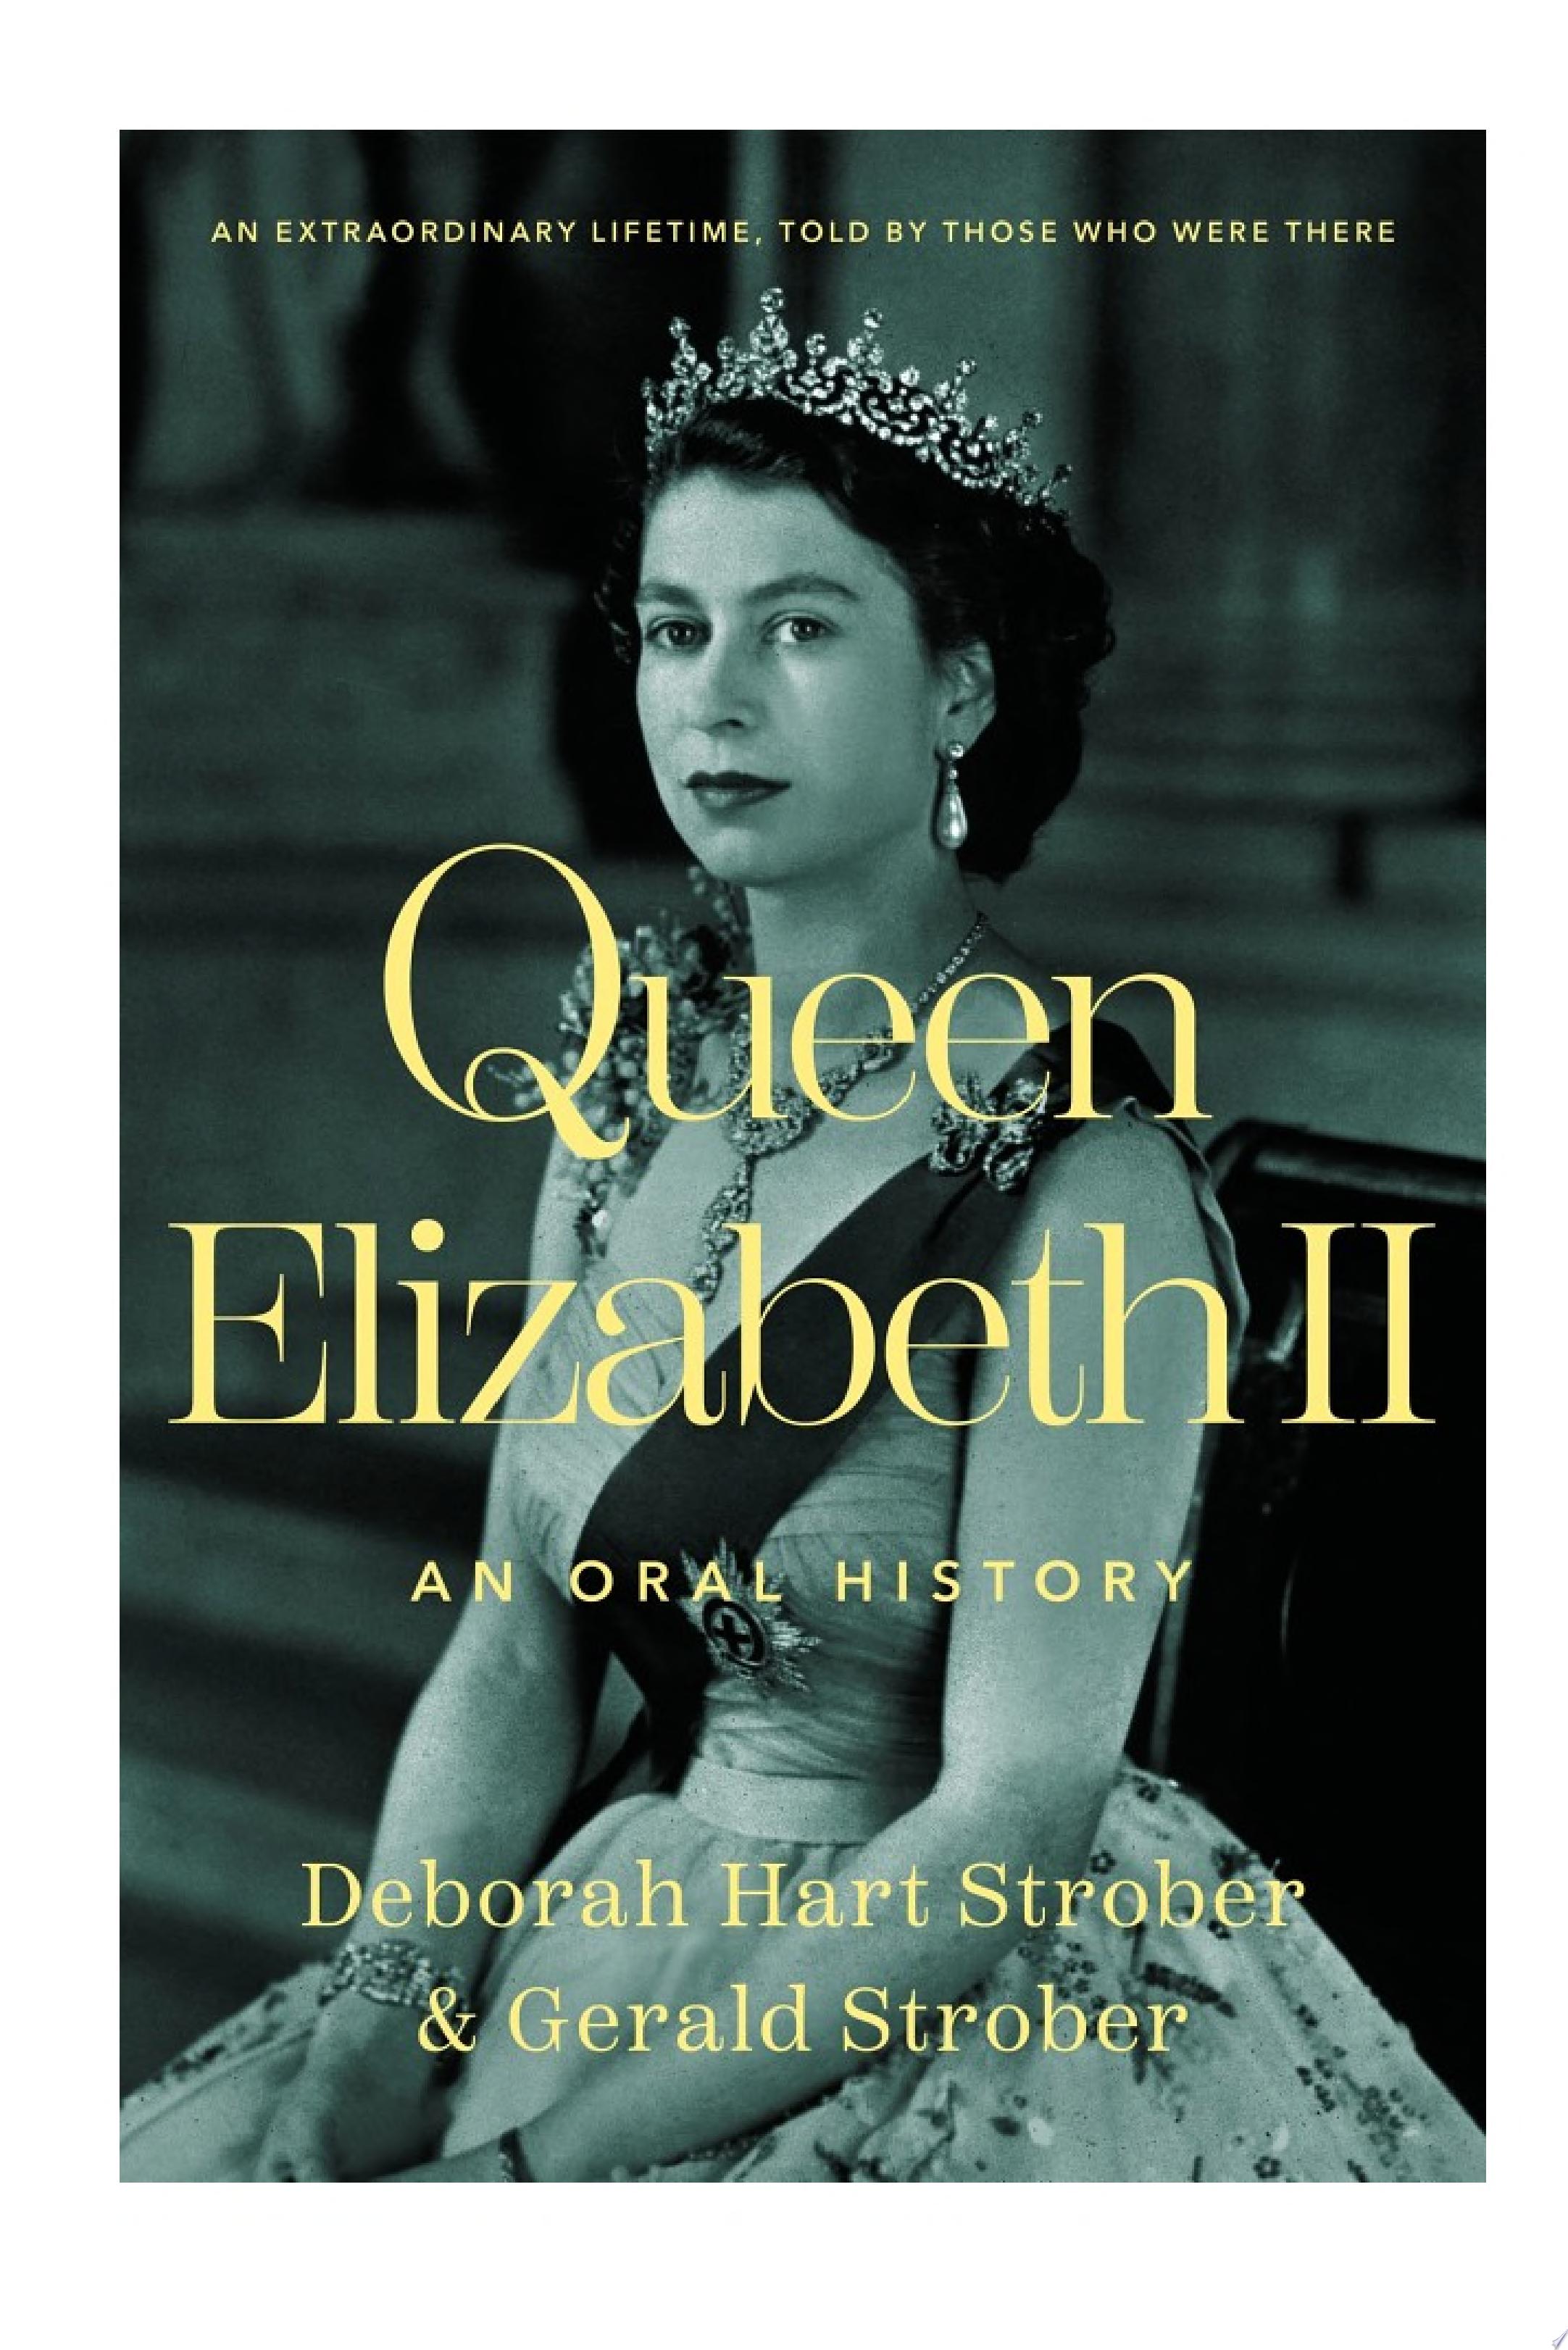 Image for "Queen Elizabeth II"